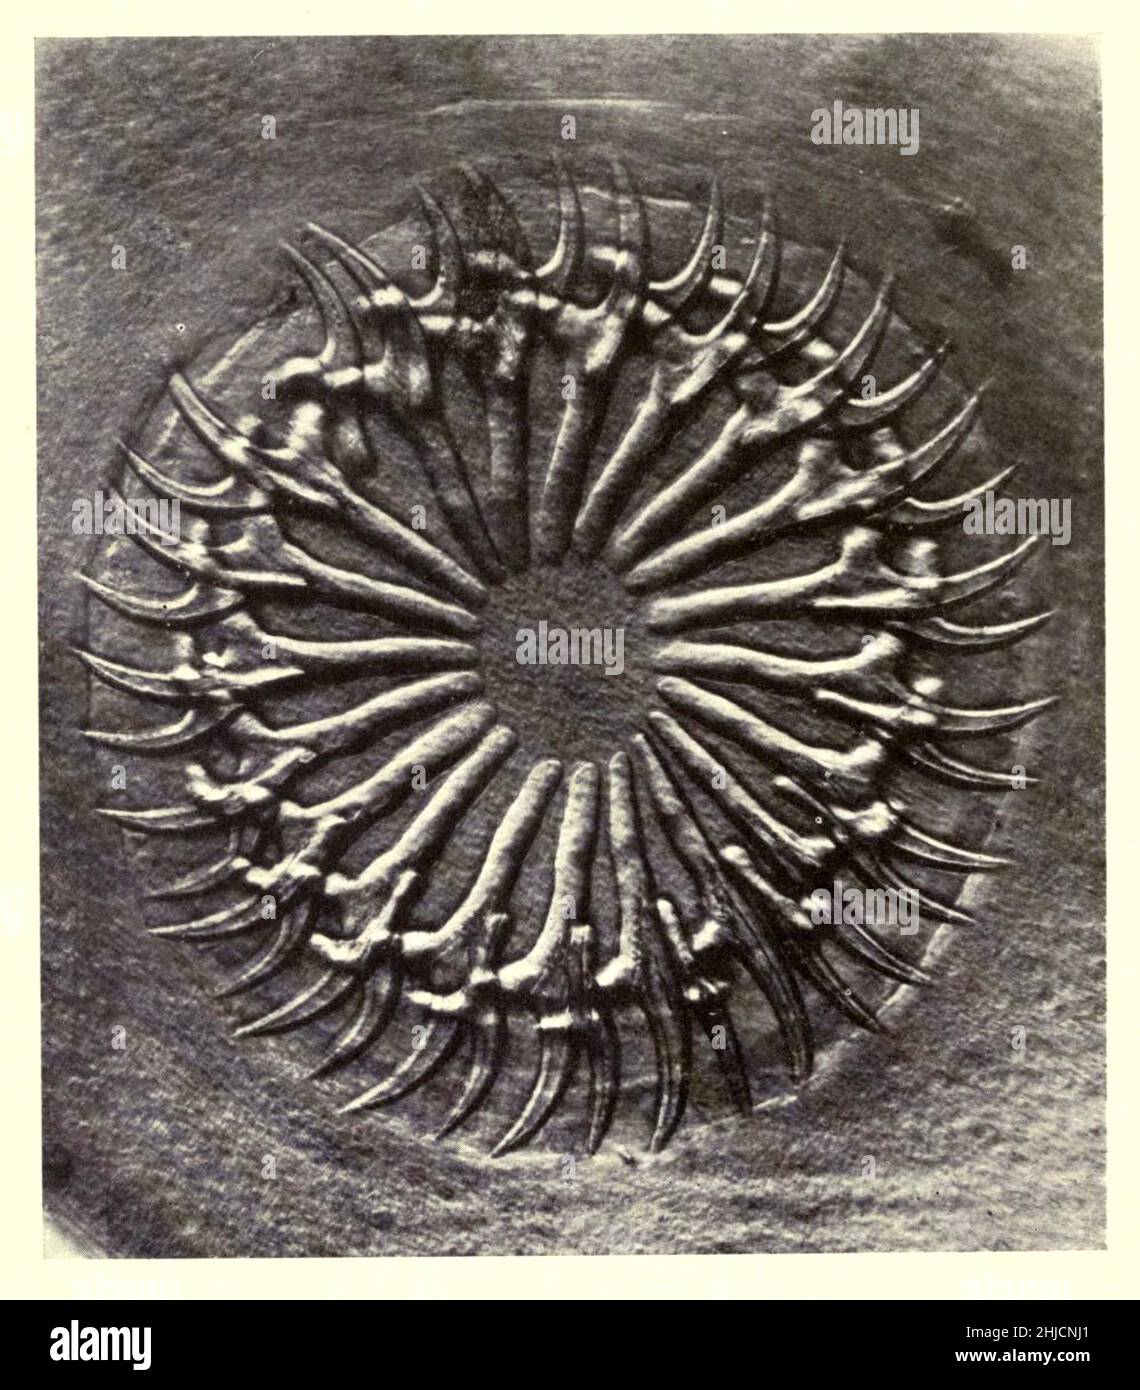 Círculo de ganchos en un scolex (el segmento anterior, similar a la cabeza de una tenia, que tiene succionadores o ganchos para la fijación). Ampliación: 150x. Fotomicrografía realizada por Arthur E Smith a principios de 1900, utilizando un microscopio y una cámara combinados. En 1904, la Royal Society de Londres exhibió al público una serie de fotomicrografías de Smith. Más tarde fueron publicados en 1909 en un libro llamado 'Nature Through Microscope & Camera'. Fueron los primeros ejemplos de fotomicroscopía que muchos habían visto. Foto de stock